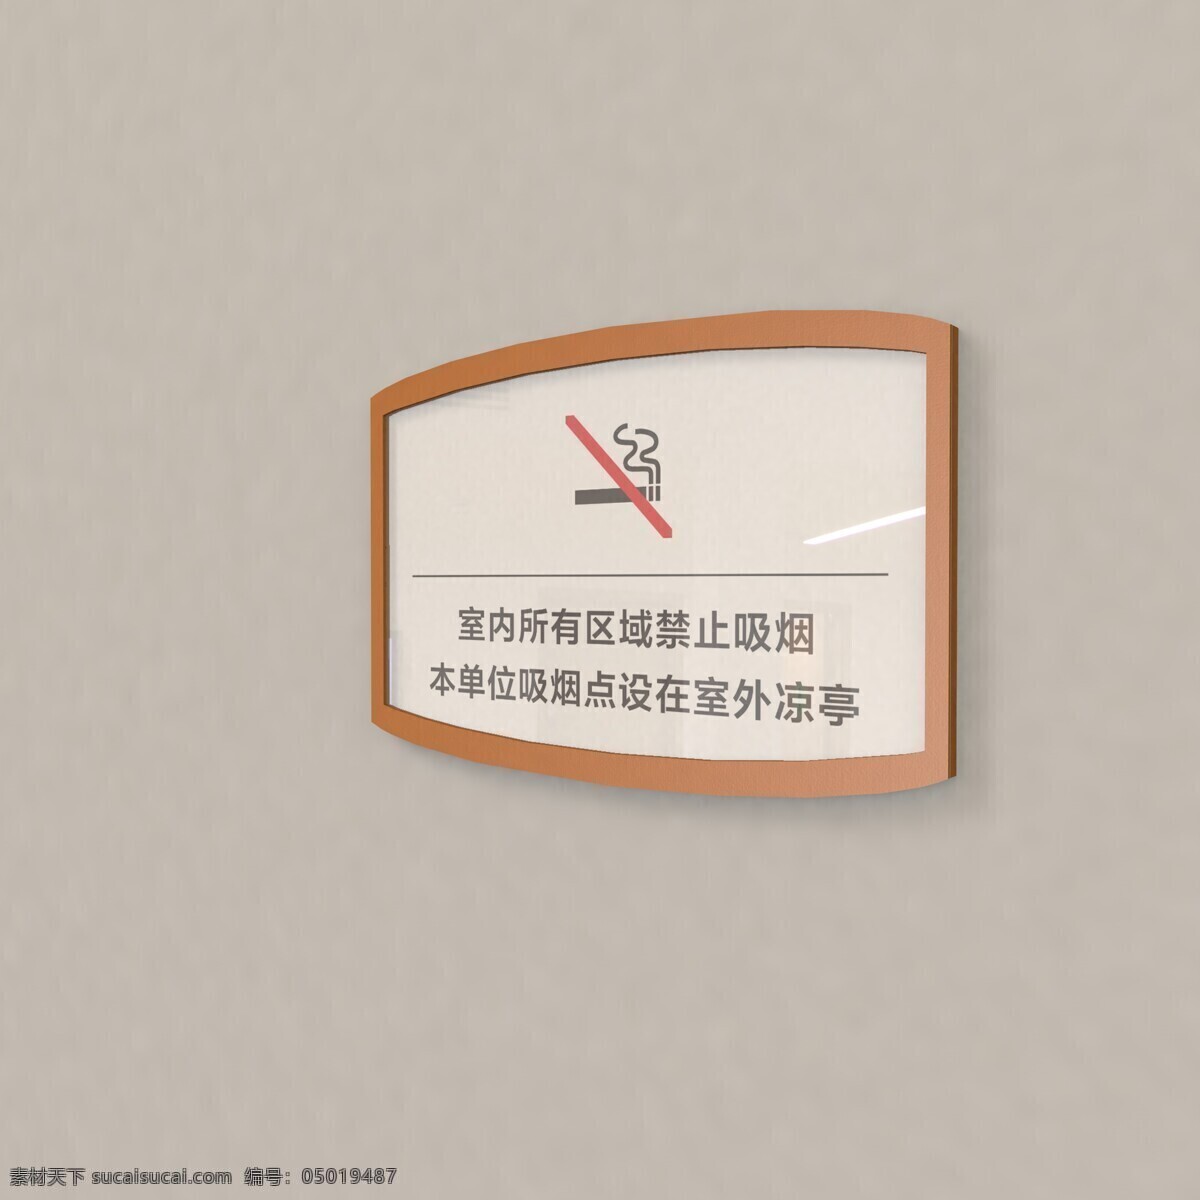 室内 禁止 吸烟 指示牌 禁烟指示牌 禁烟标识牌 室内禁烟标识 标识牌 禁烟标识 导视系统